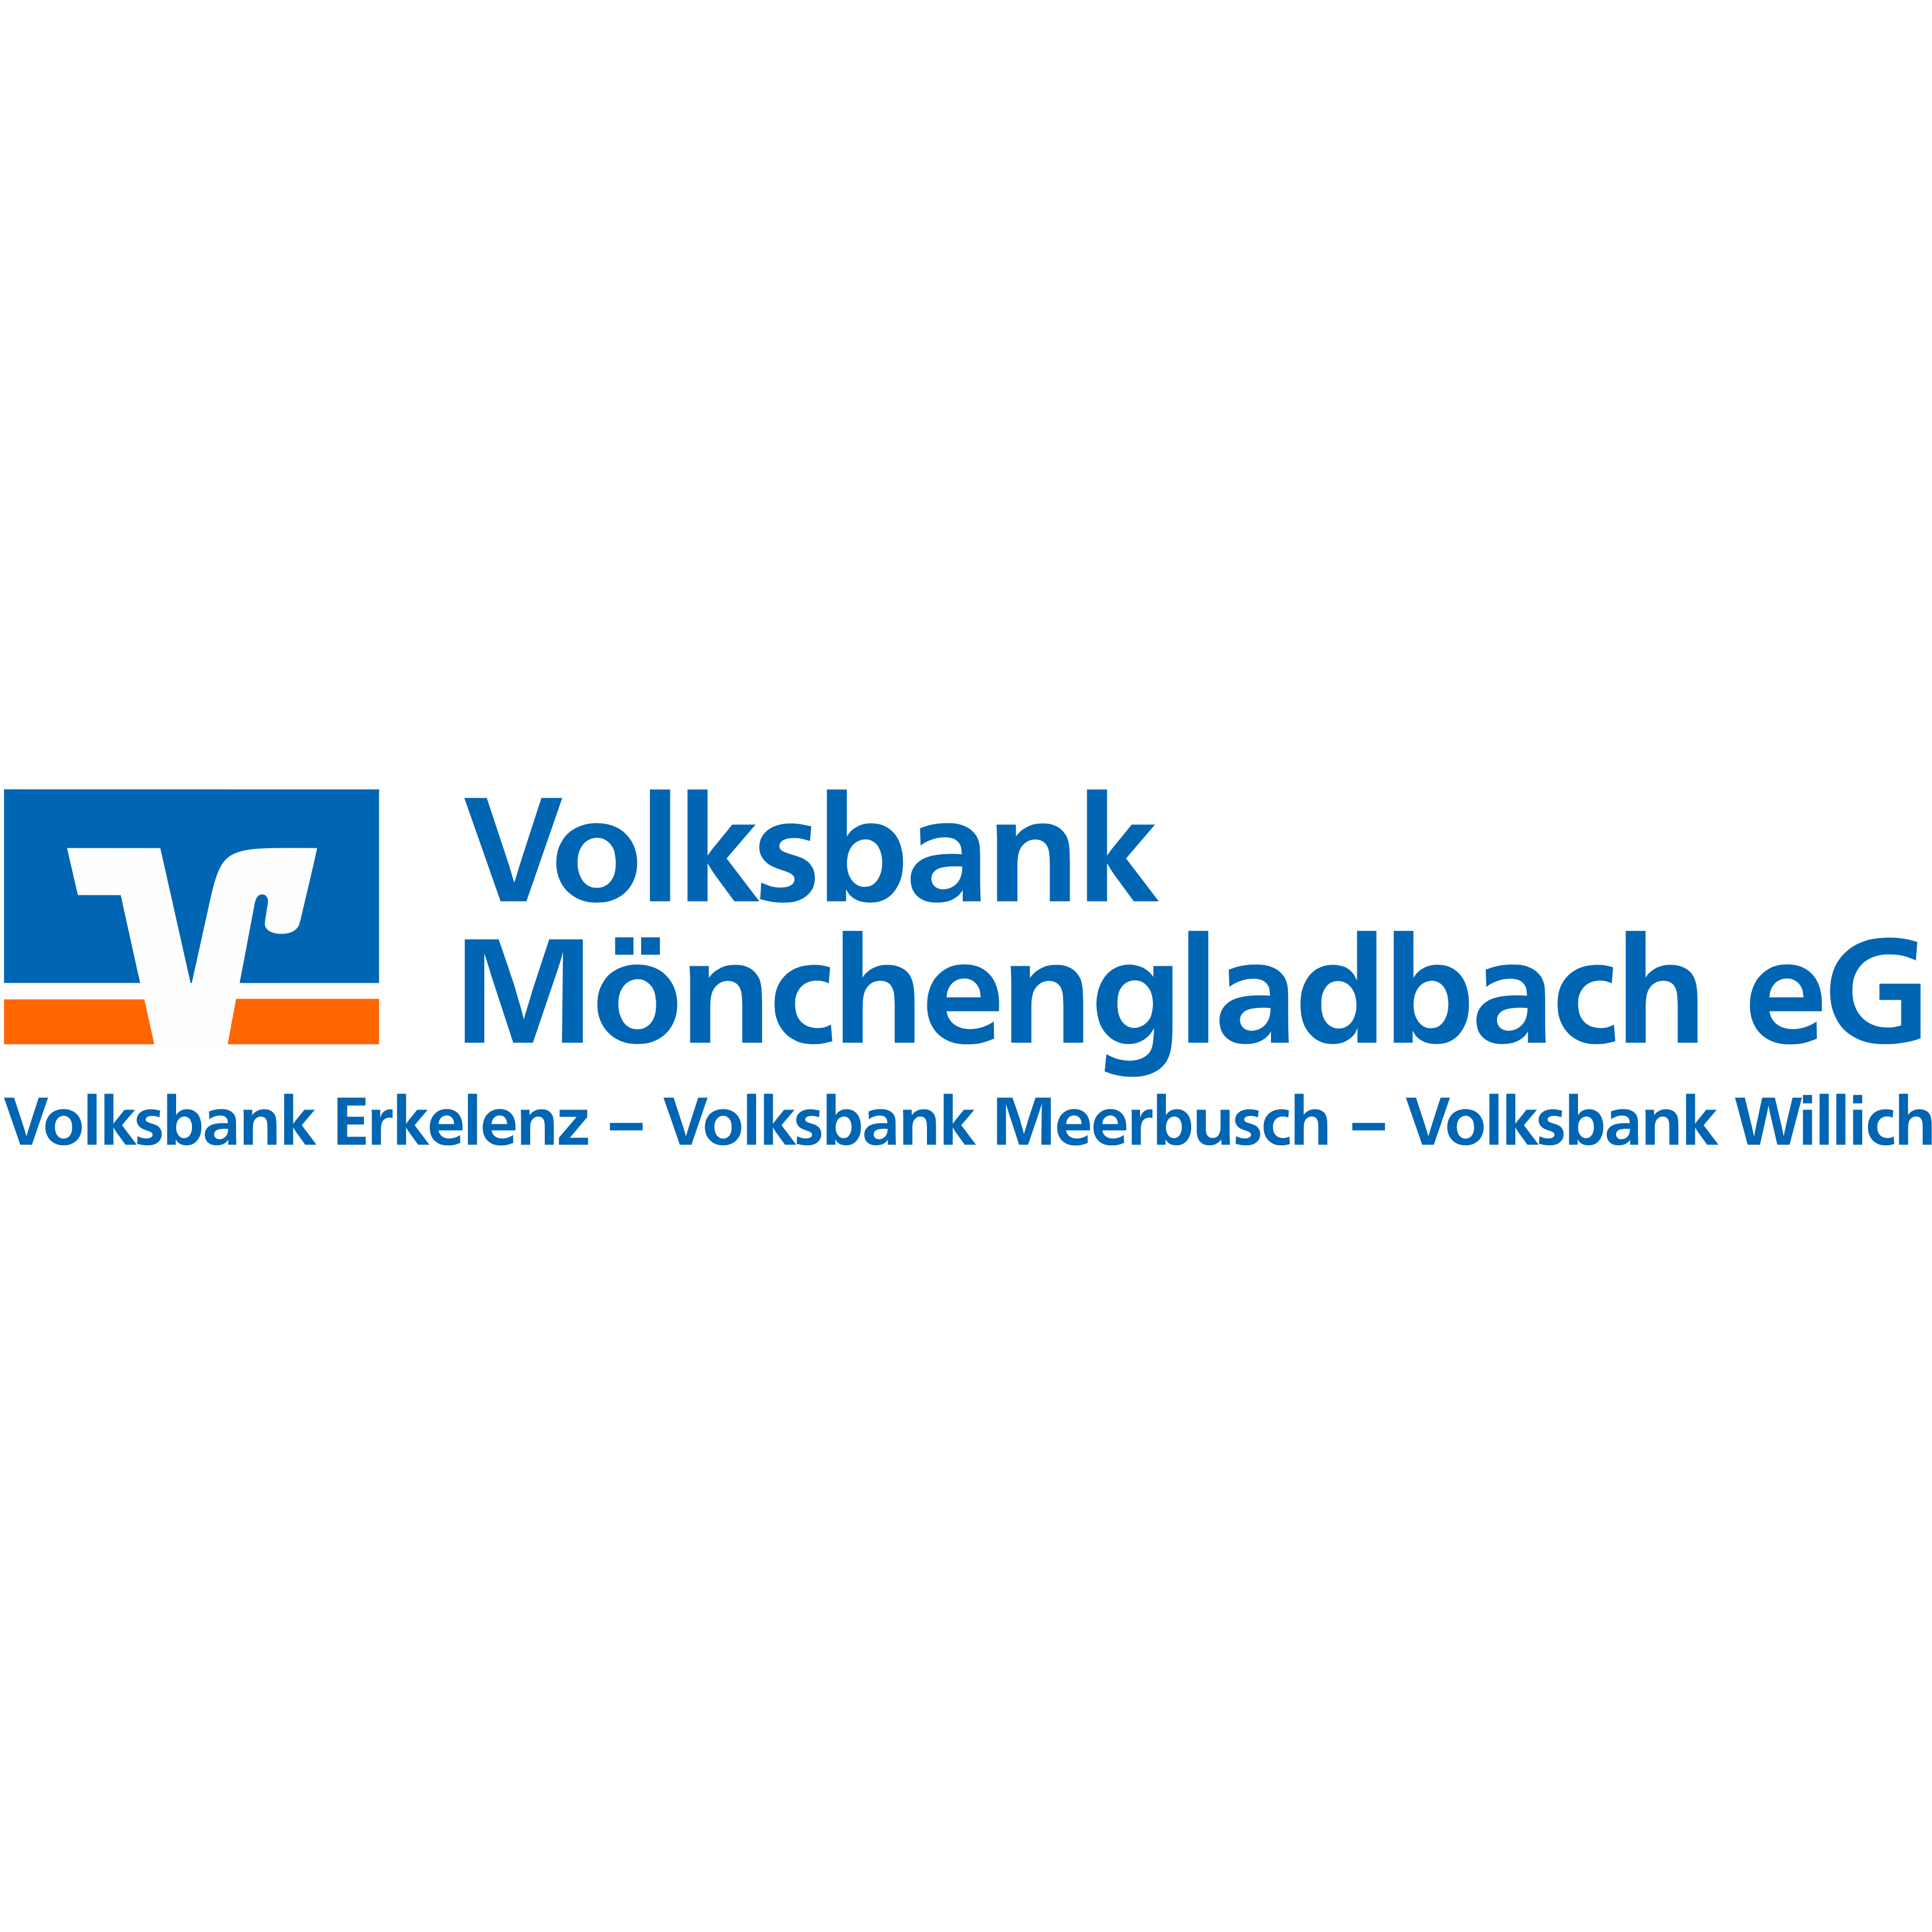 Volksbank Mönchengladbach eG - BeratungsCenter Neuwerk in Mönchengladbach - Logo